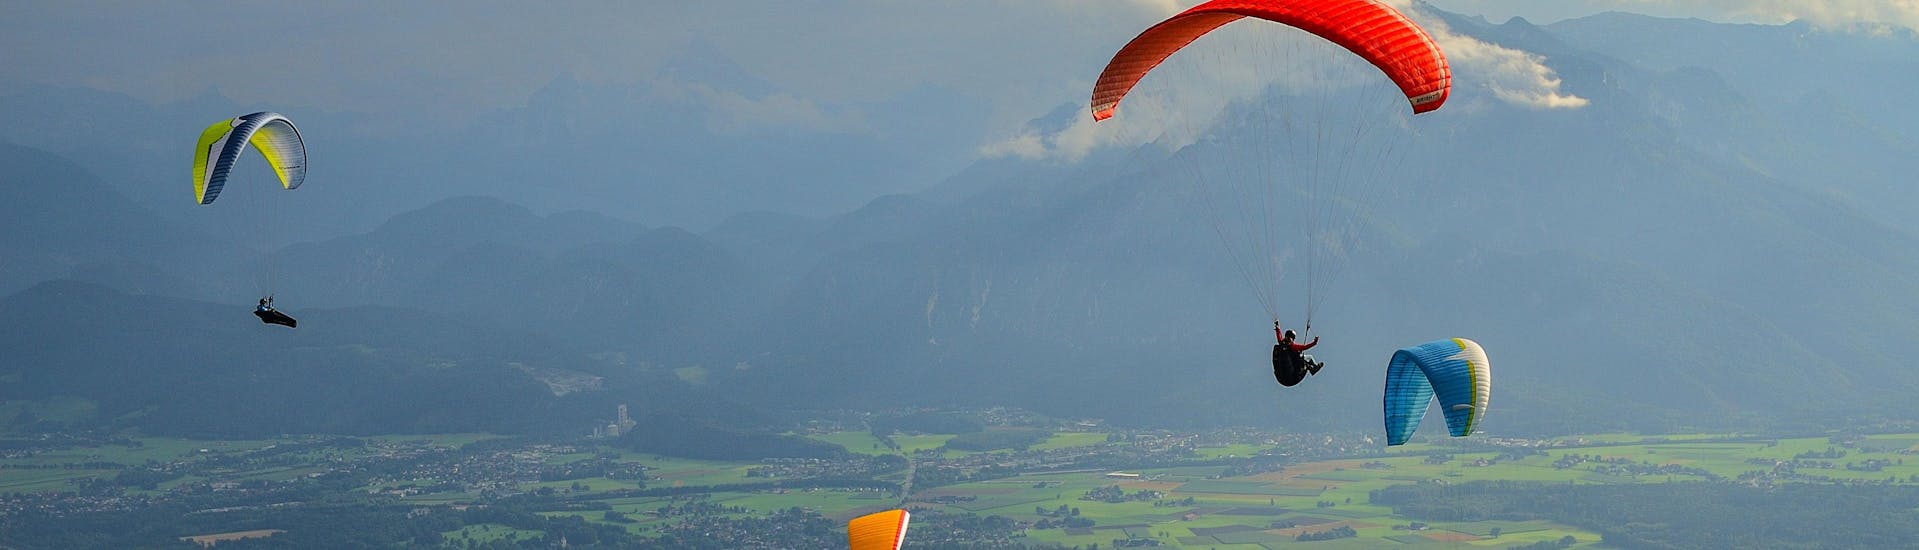 Un parapentiste est émerveillé par le paysage lors d'un vol en parapente biplace dans la célèbre destination de parapente Salzbourg.